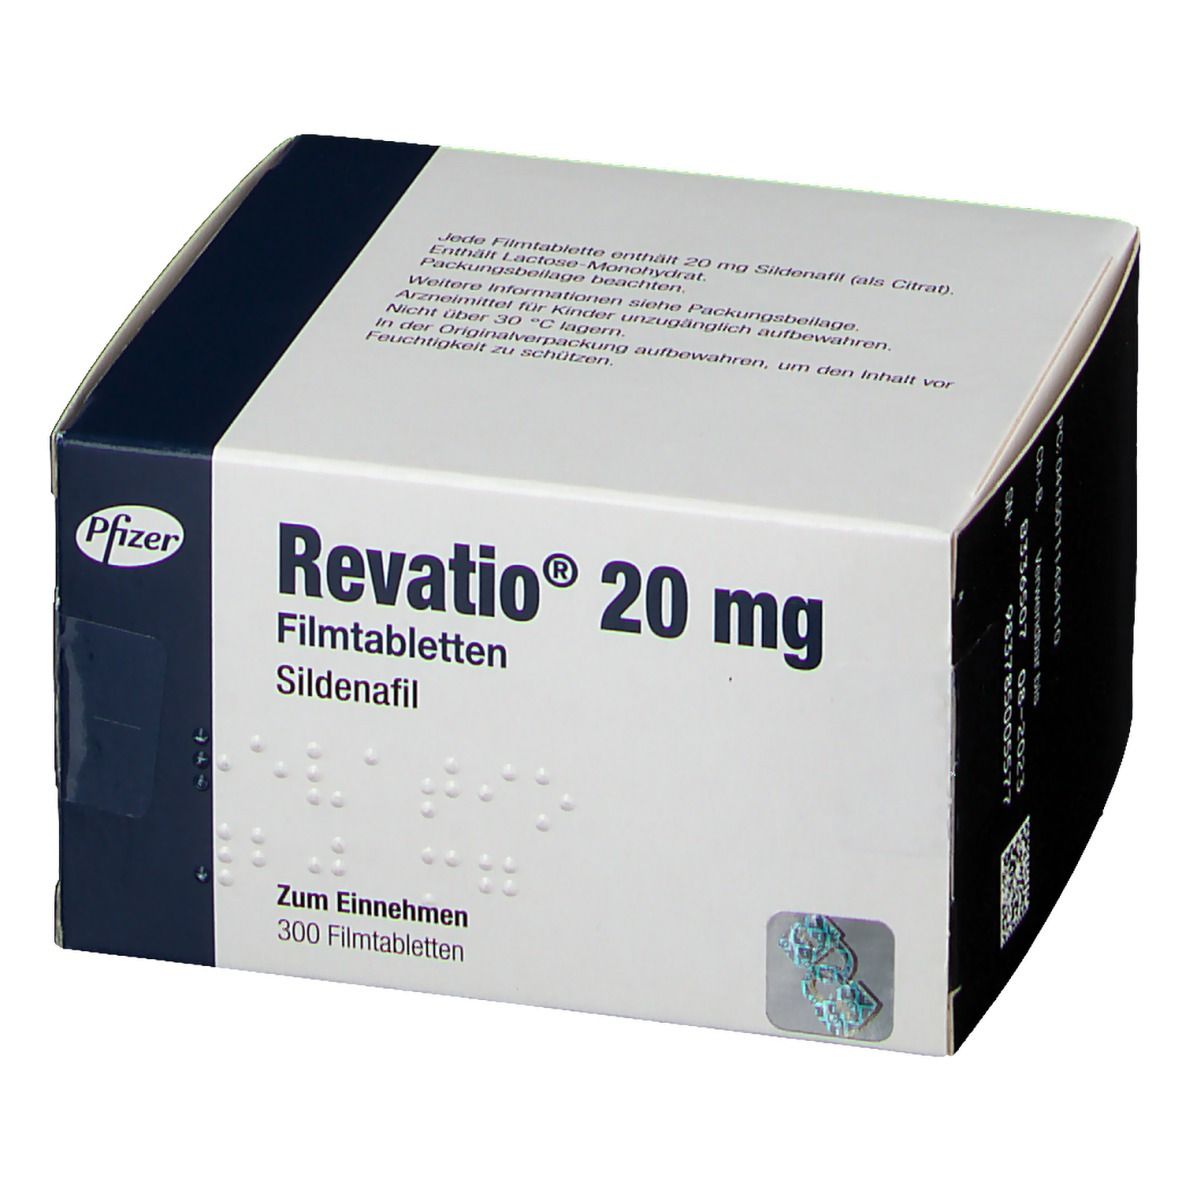 Revatio® 20 mg